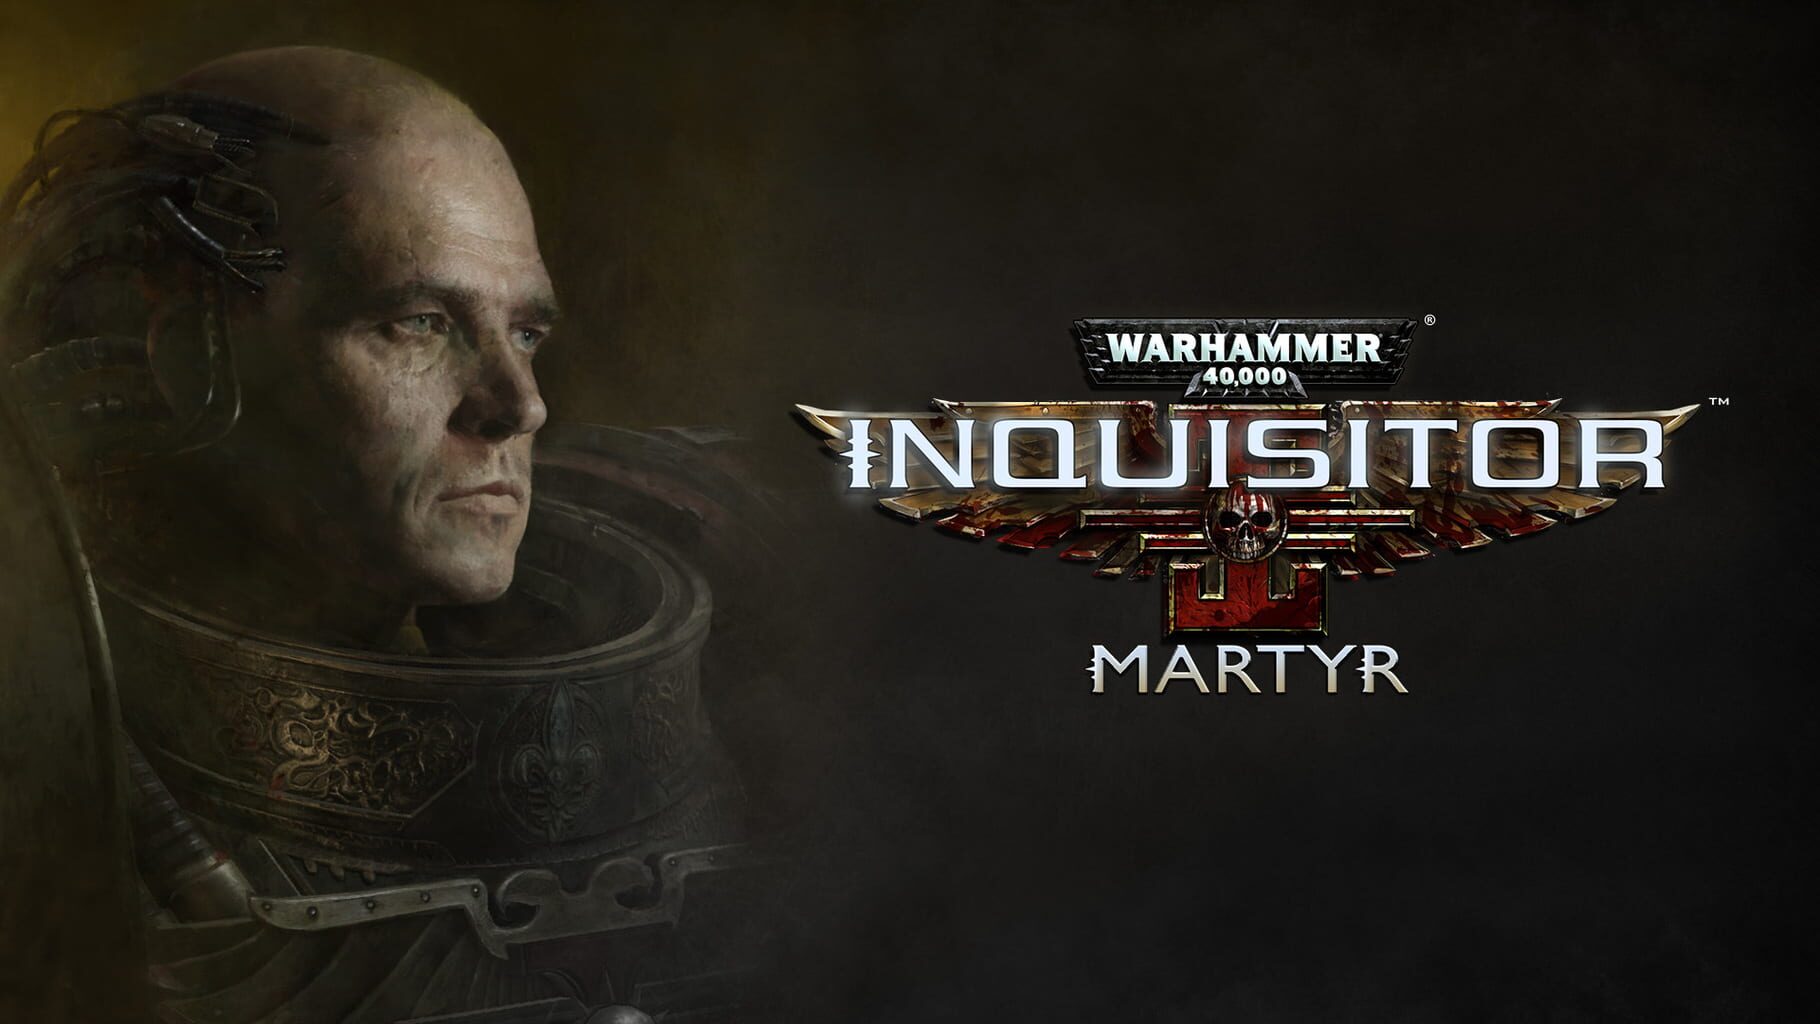 Arte - Warhammer 40,000: Inquisitor - Martyr